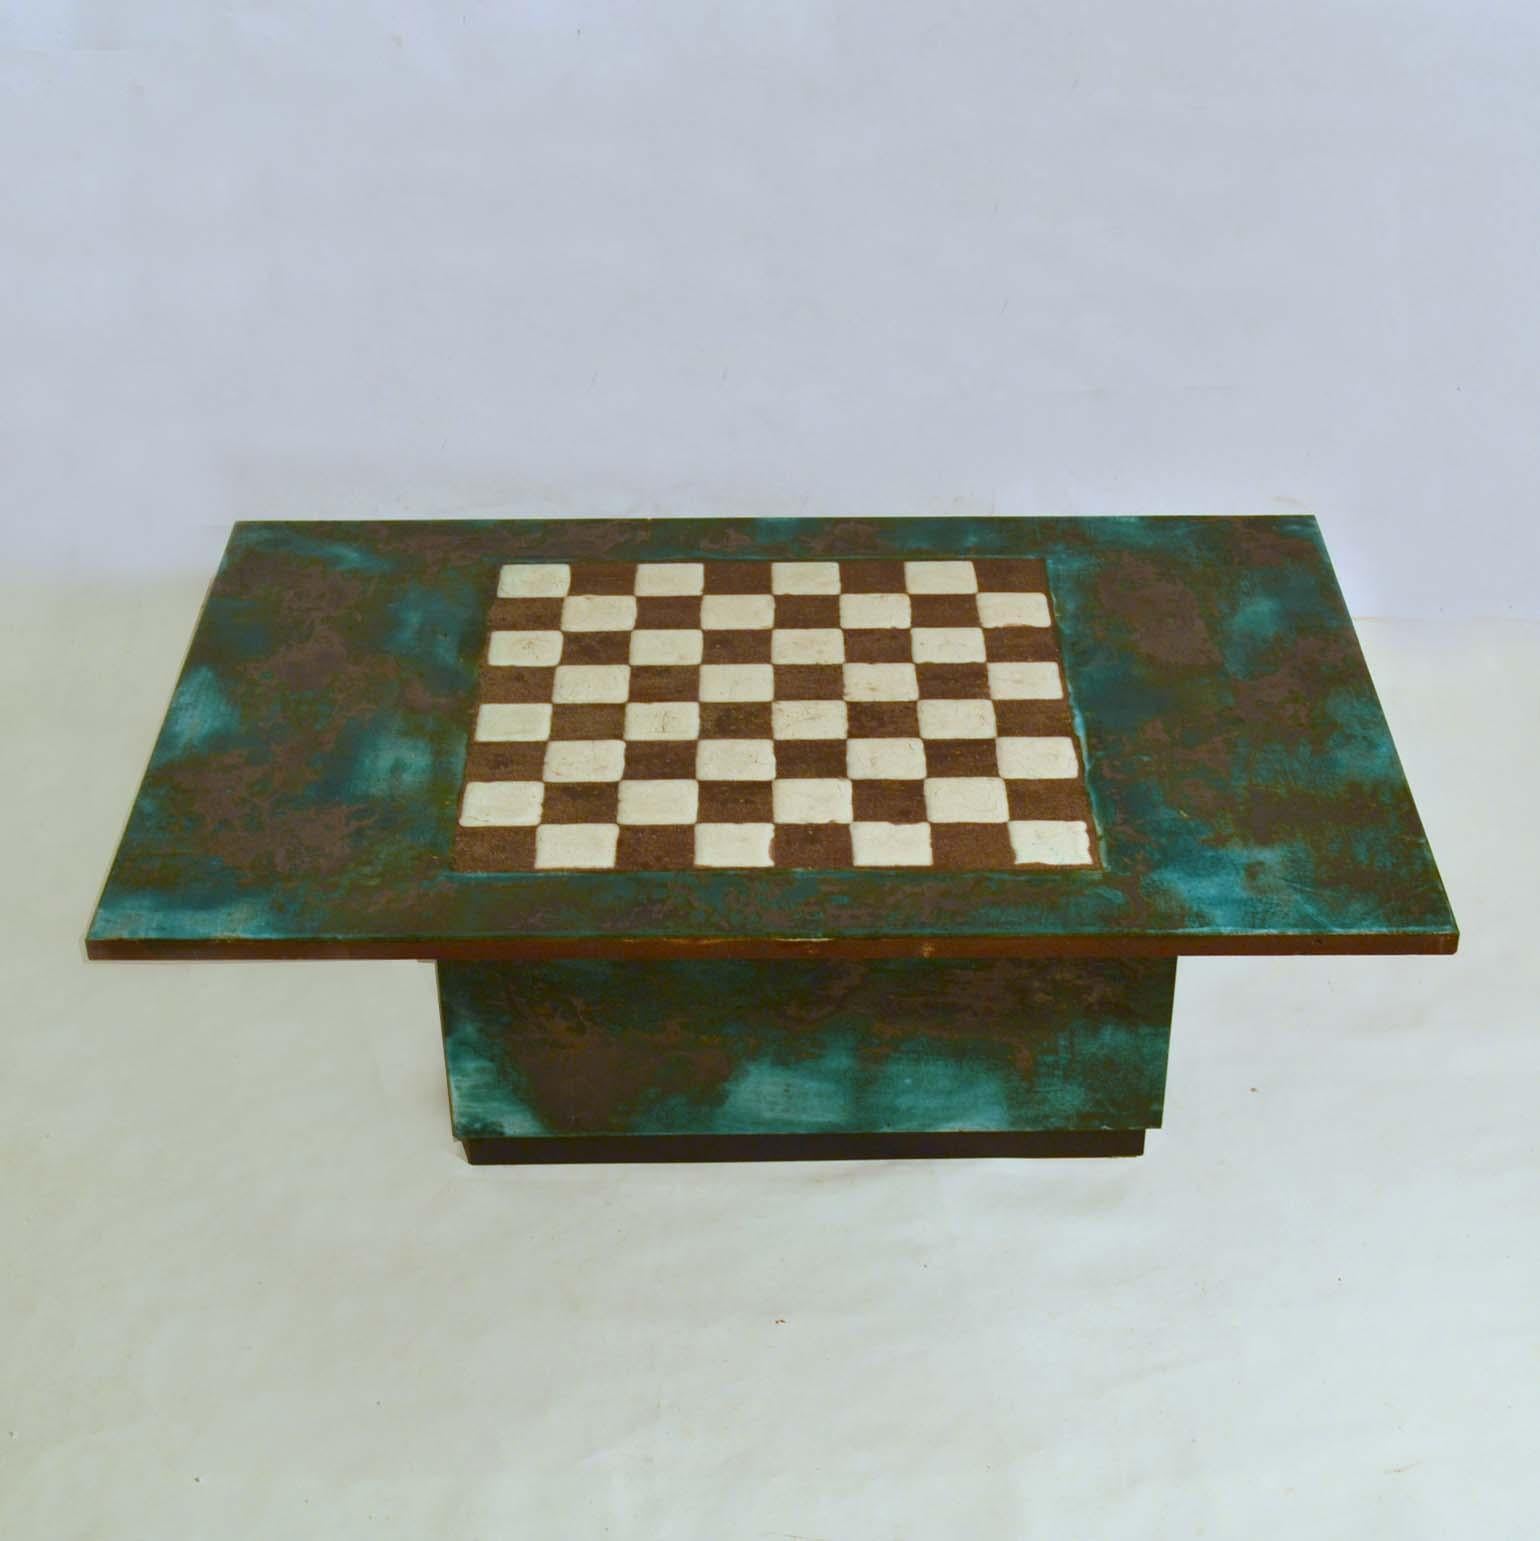 Cette table d'échecs et table basse unique des années 1960, sculptée à la main, est à la fois sculpturale et fonctionnelle. Elle est fabriquée à partir de grandes dalles de céramique. La table dégage une richesse matérielle et une simplicité